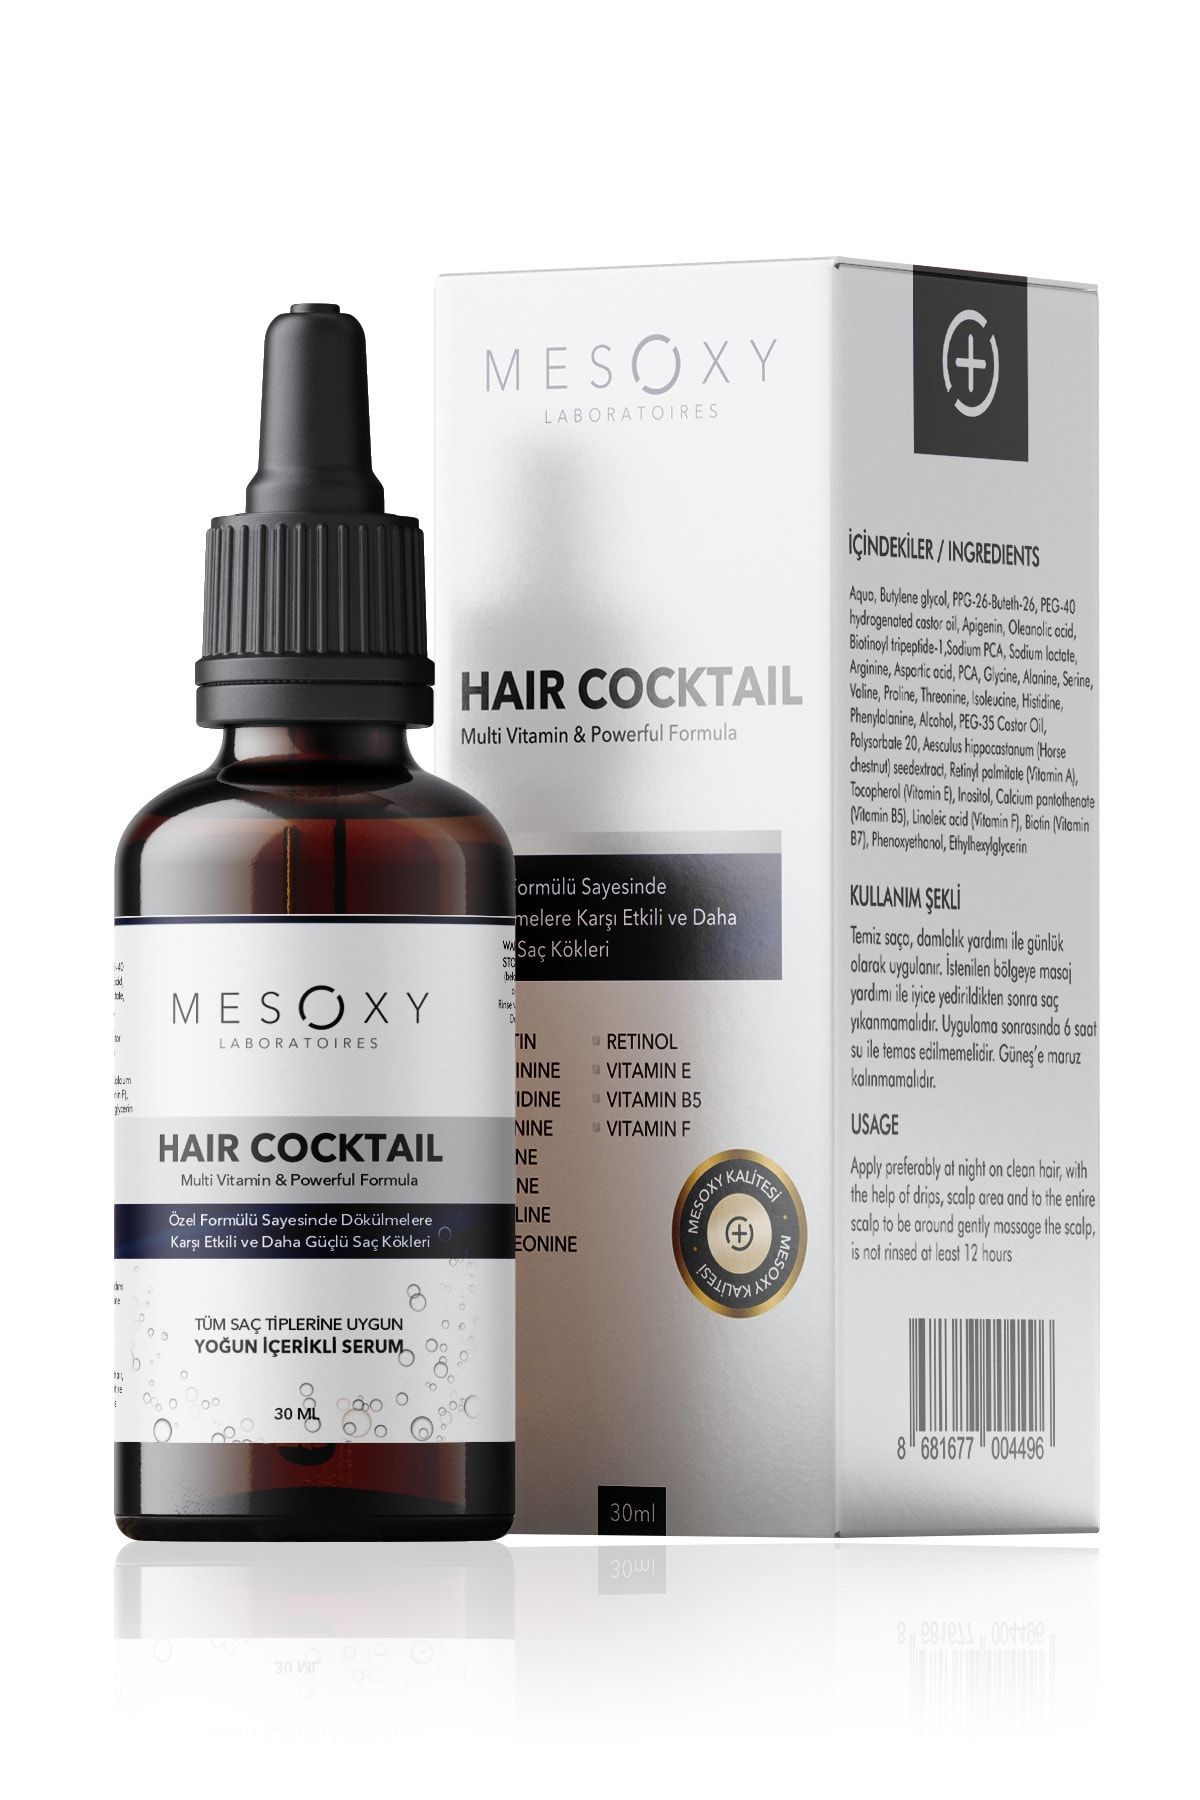 Mesoxy Laboratoires Hair Cocktail Dökülme Karşıtı Ve Saç Kökü Besleyici Serum 30ml